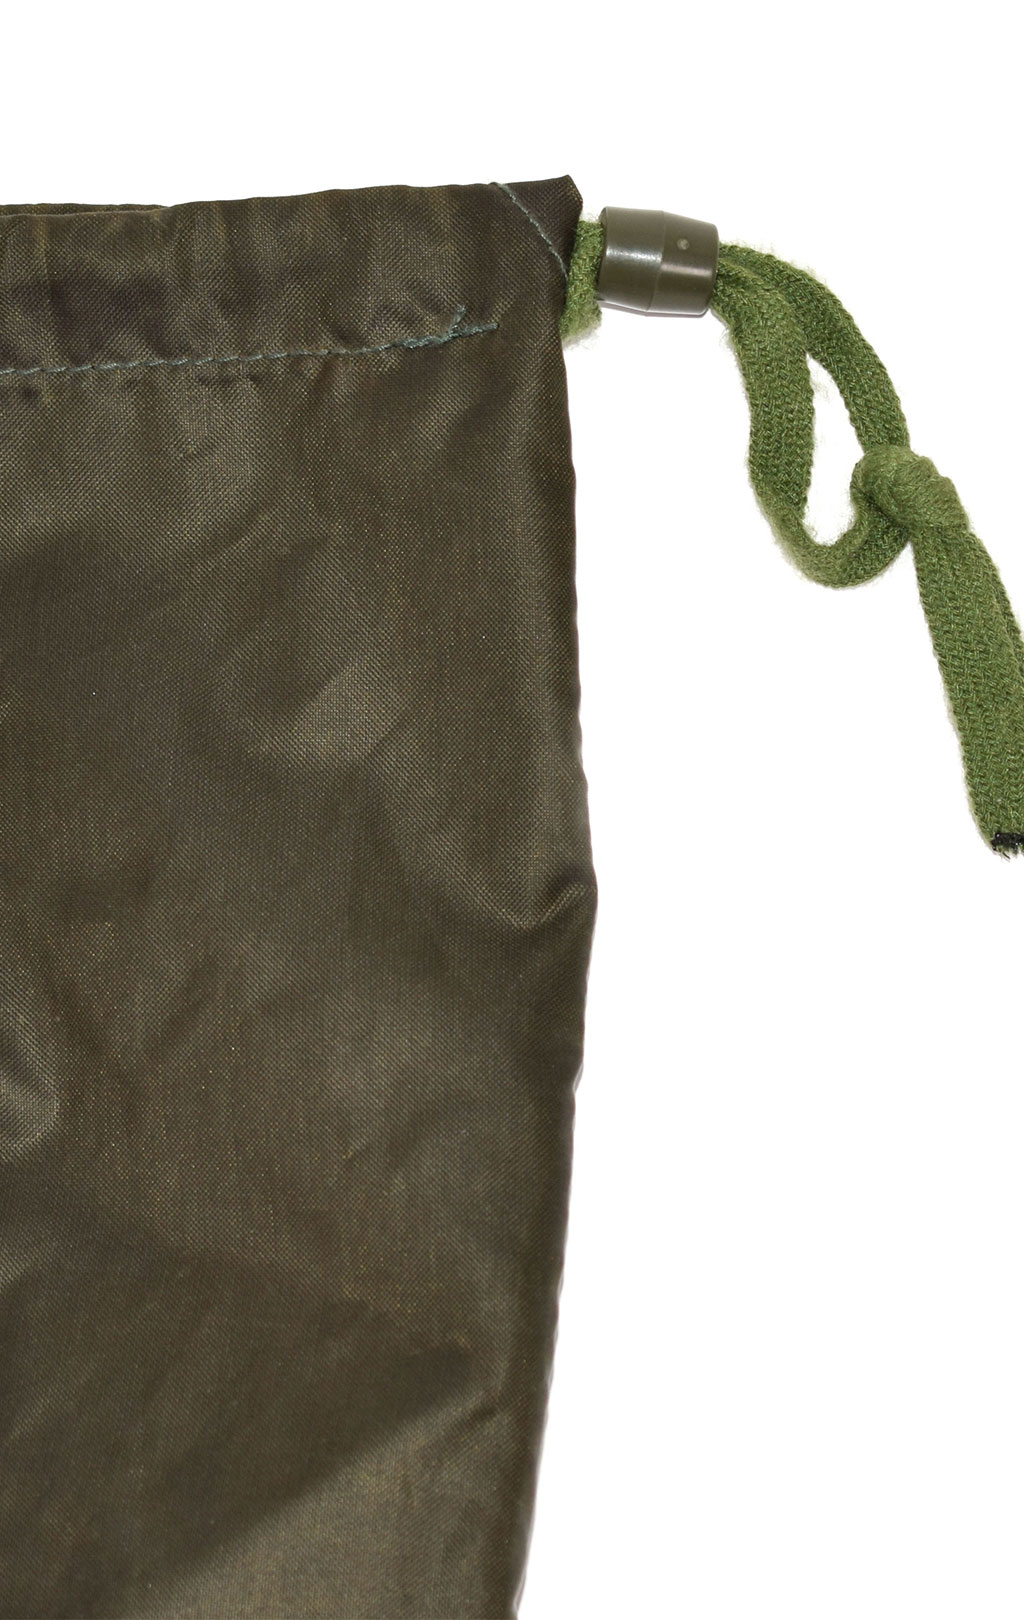 Мешок непромокаемый Bag Insertion Rucksak olive б/у США